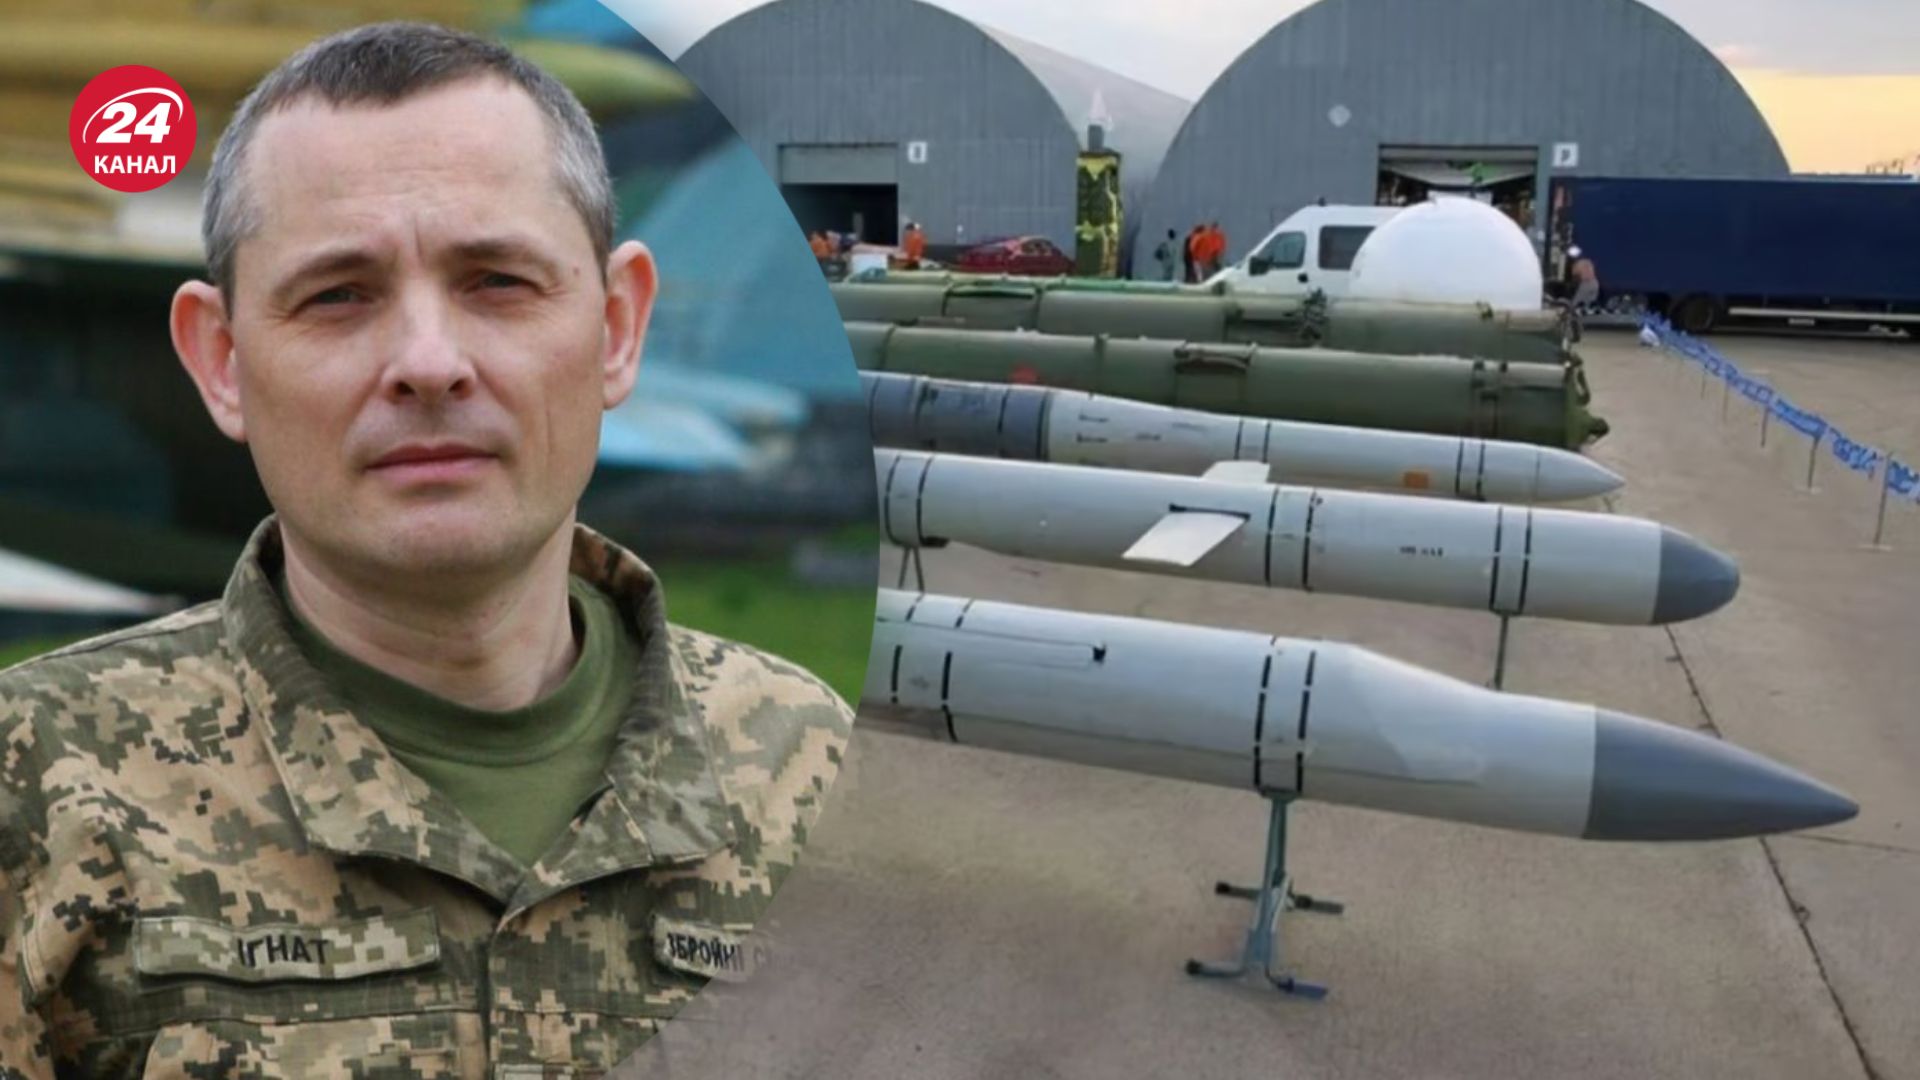 Игнат прокомментировал наращивание производства ракет россиянами